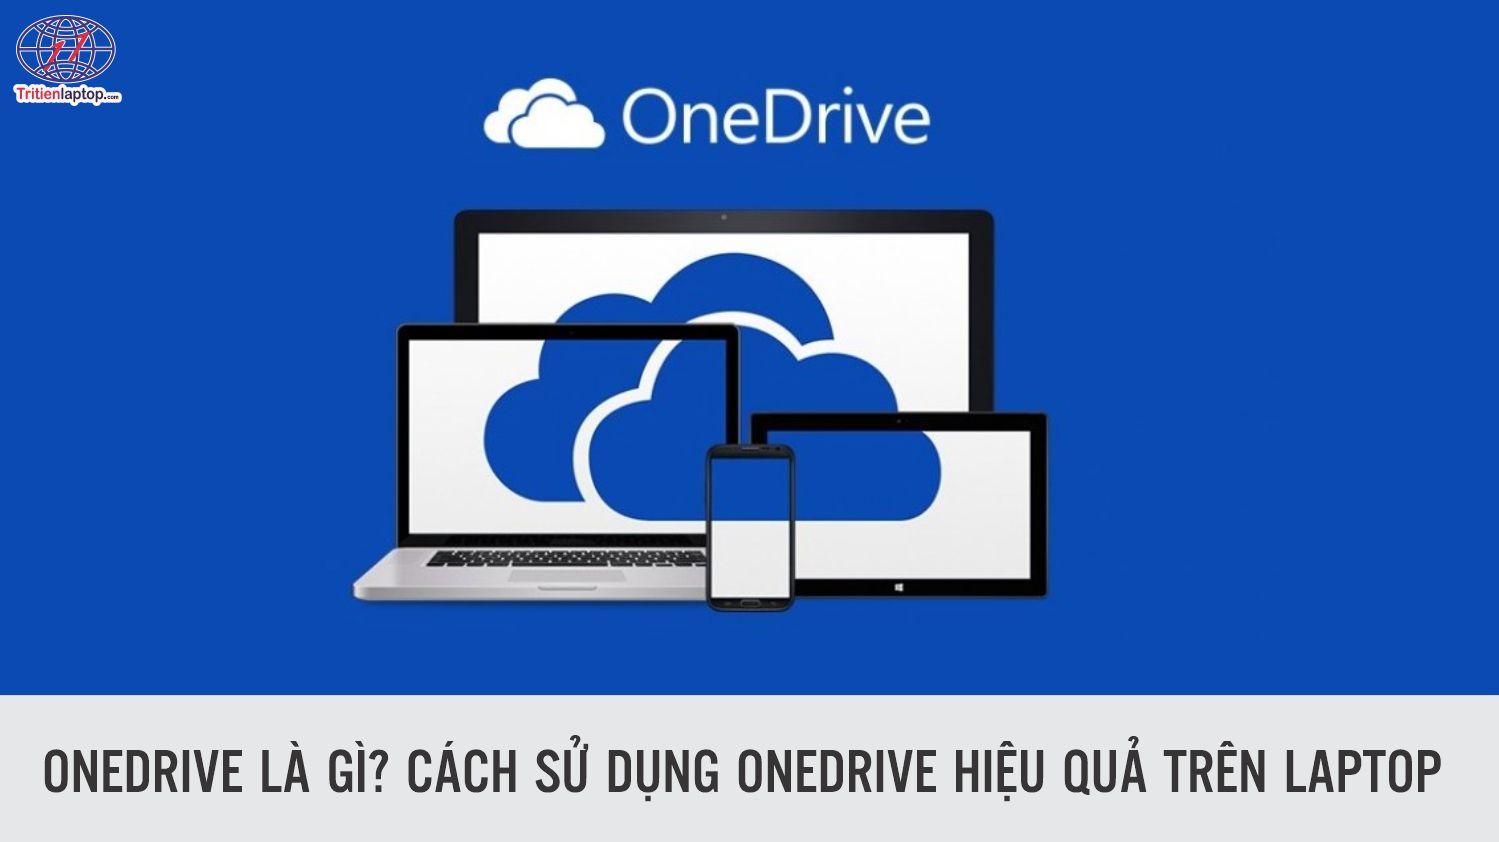 Onedrive là gì? Cách sử dụng OneDrive hiệu quả trên laptop